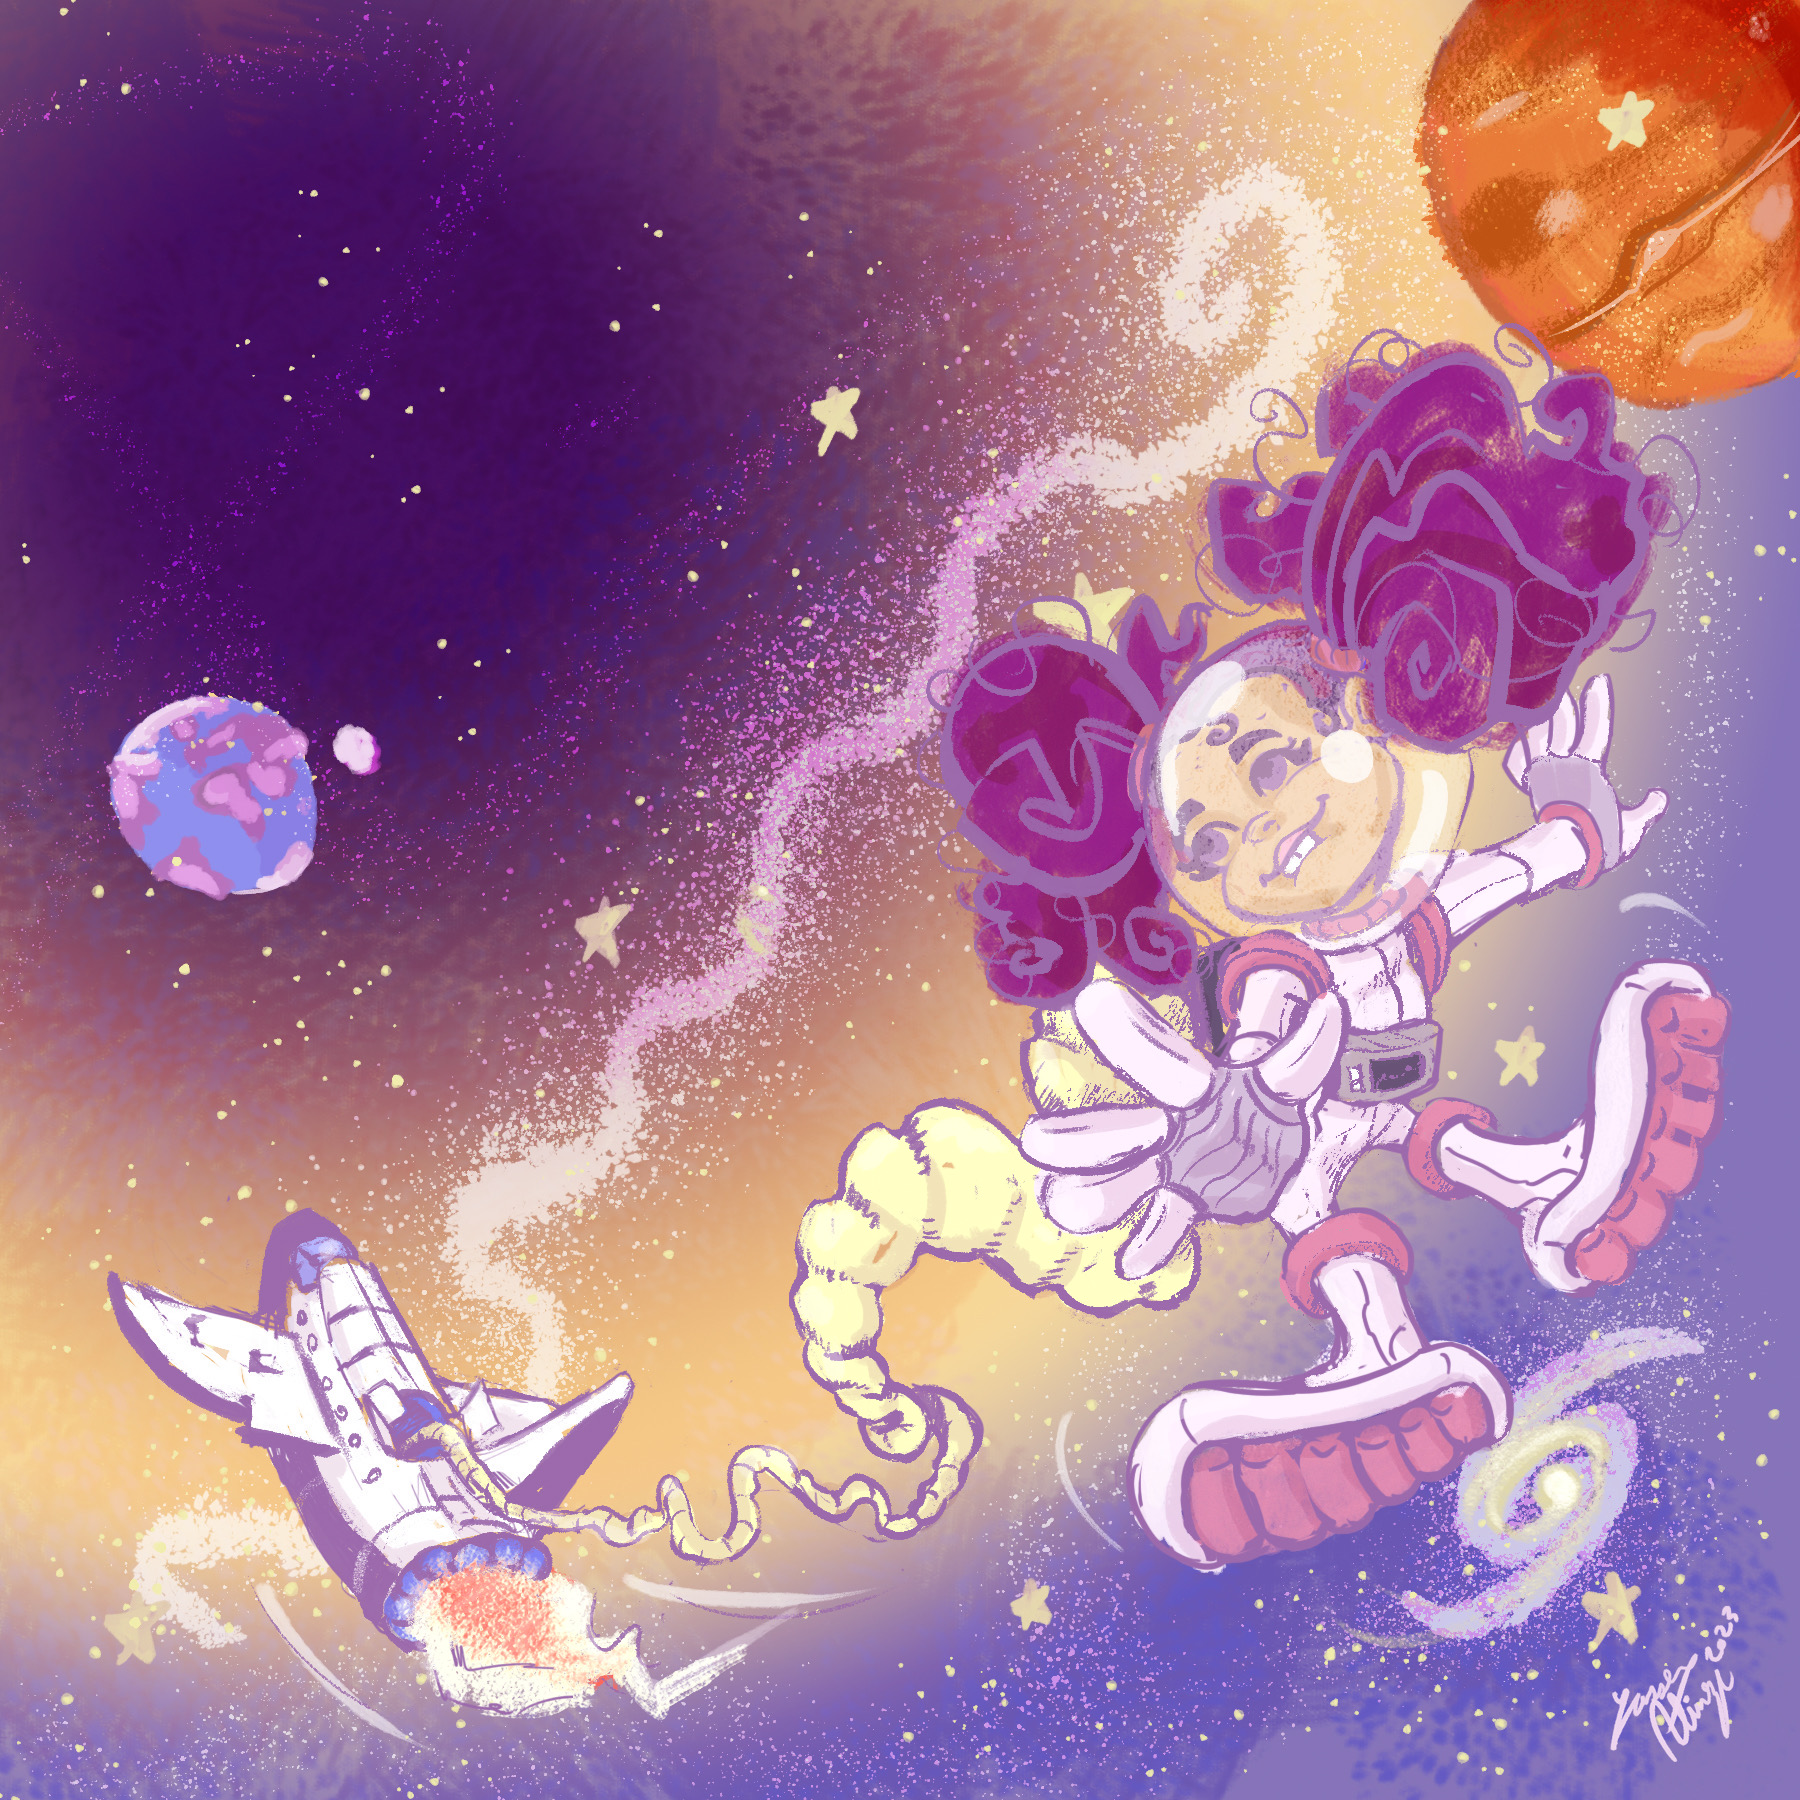 Safiya in space